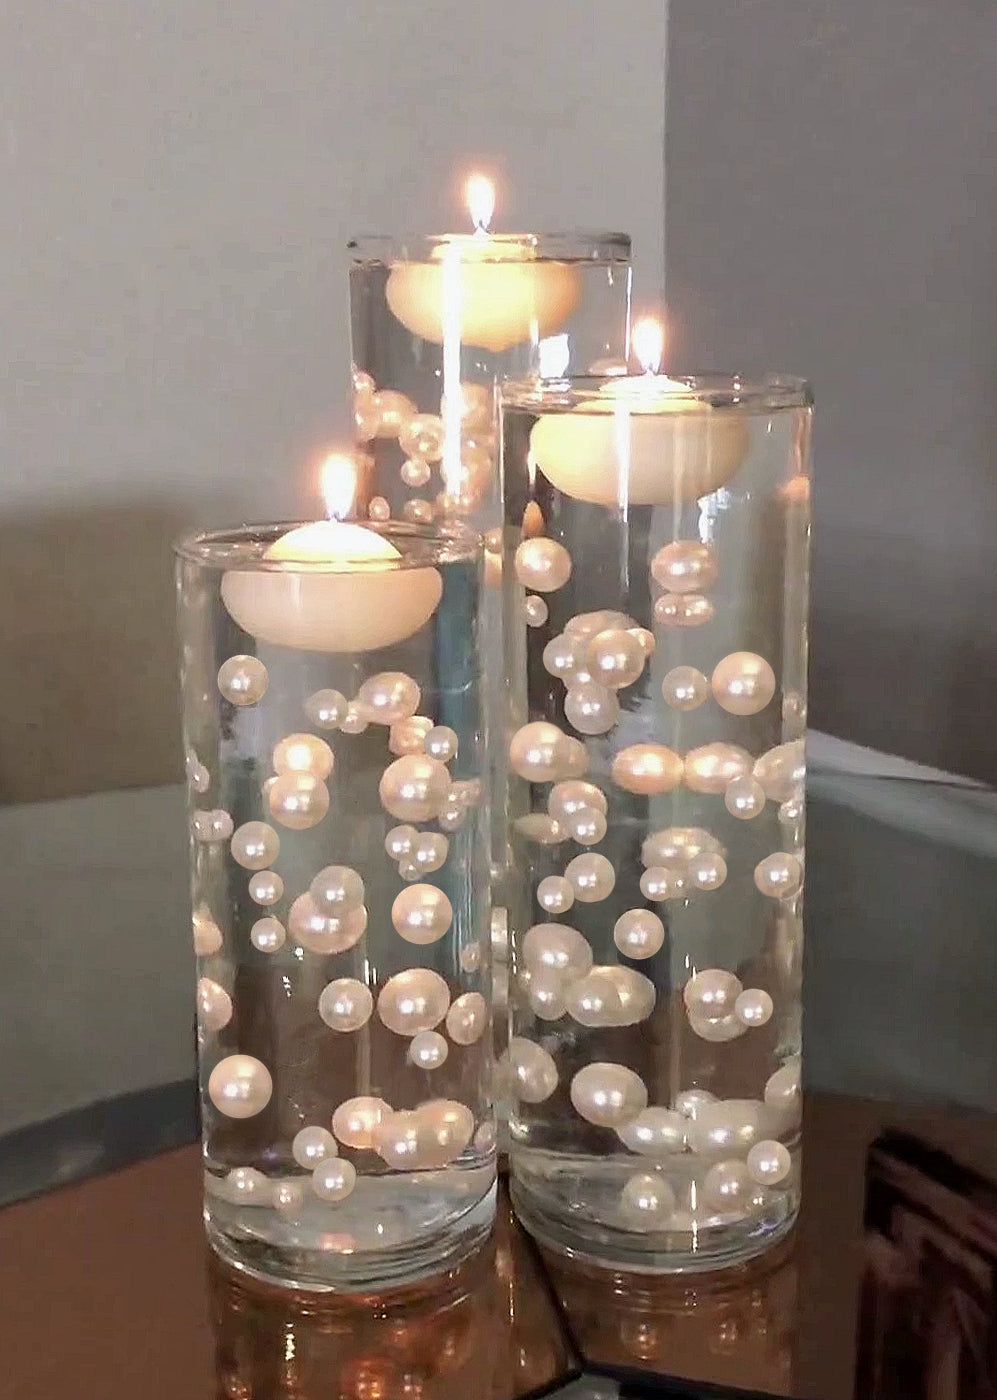 Remplisseurs de vase de bougies flottantes blanches pour les